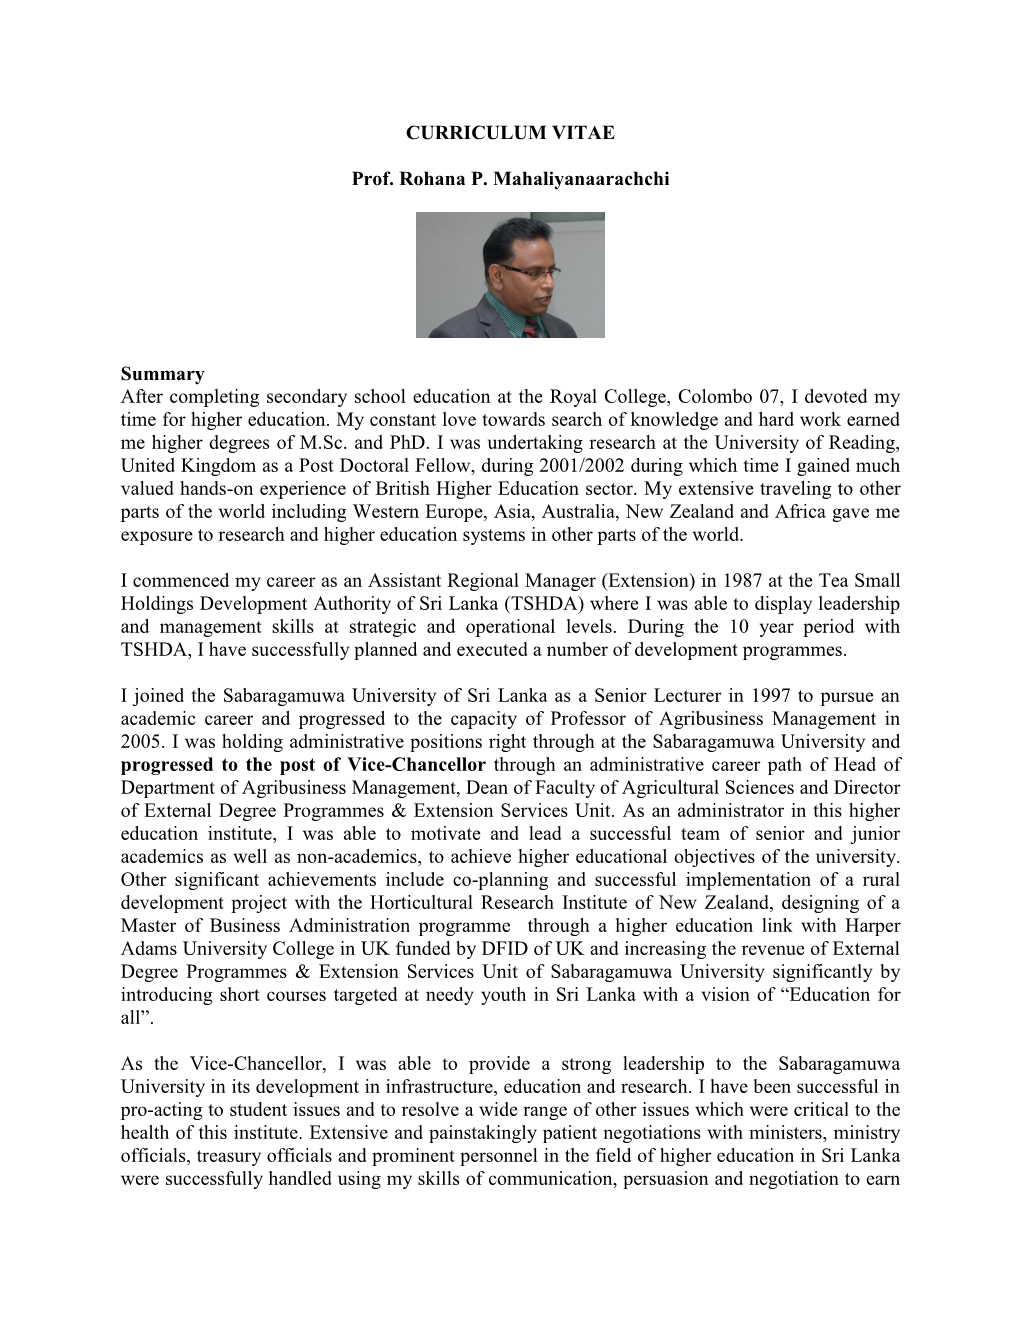 CURRICULUM VITAE Prof. Rohana P. Mahaliyanaarachchi Summary